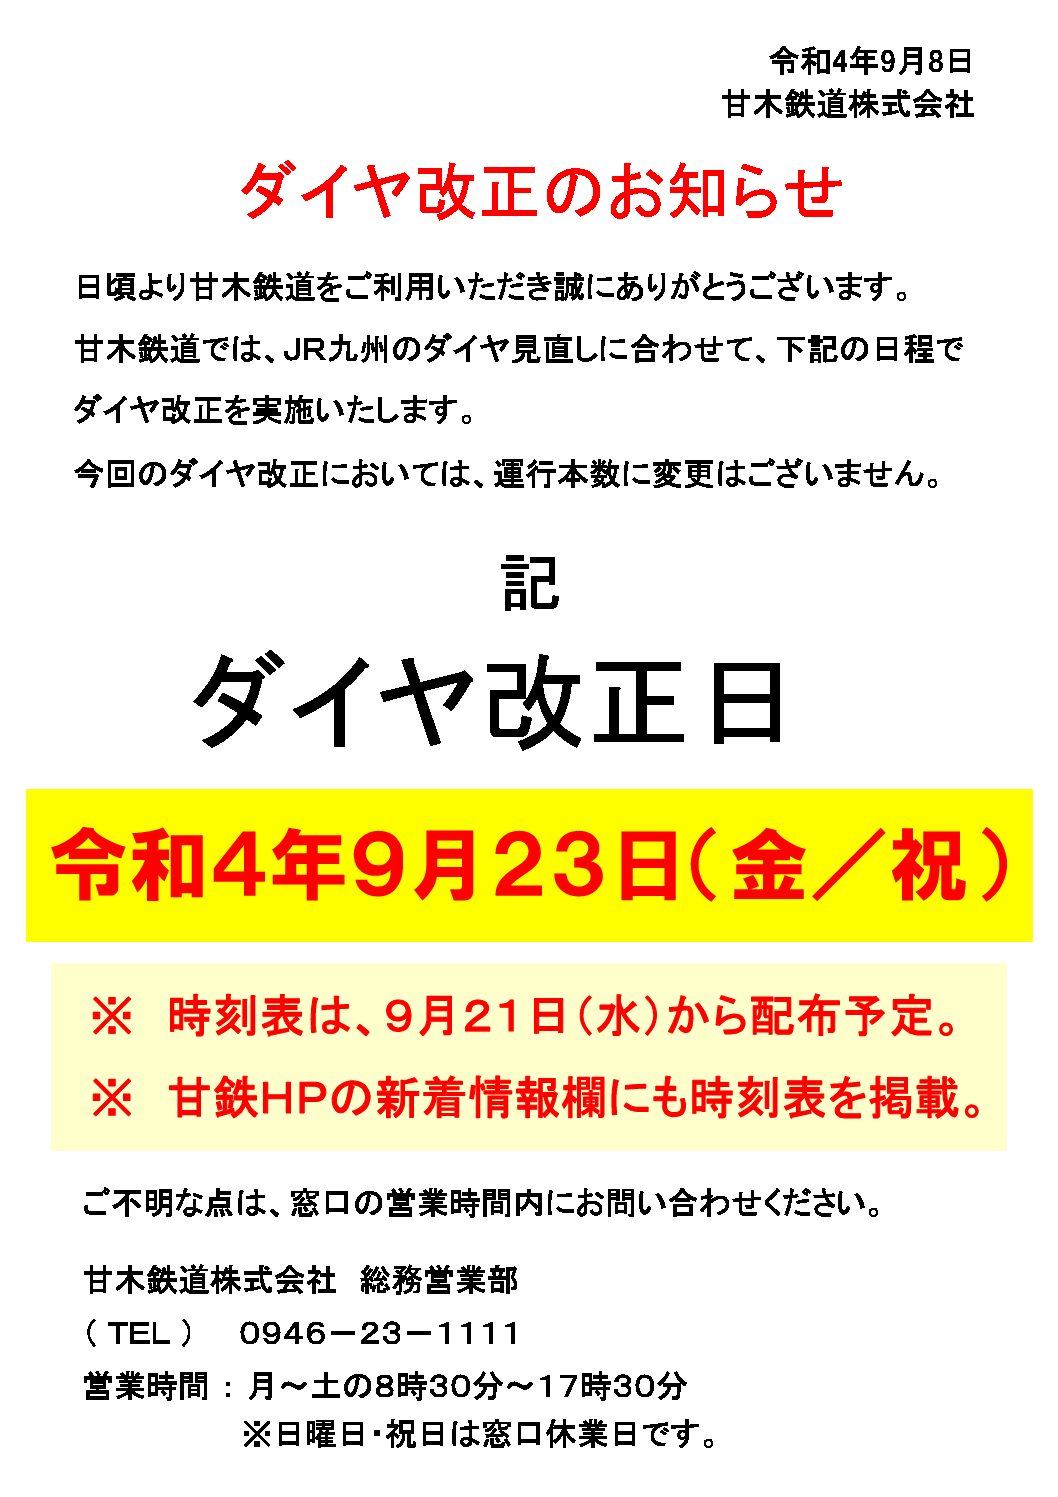 【甘木鉄道】令和4年9月23日にダイヤ改正を実施